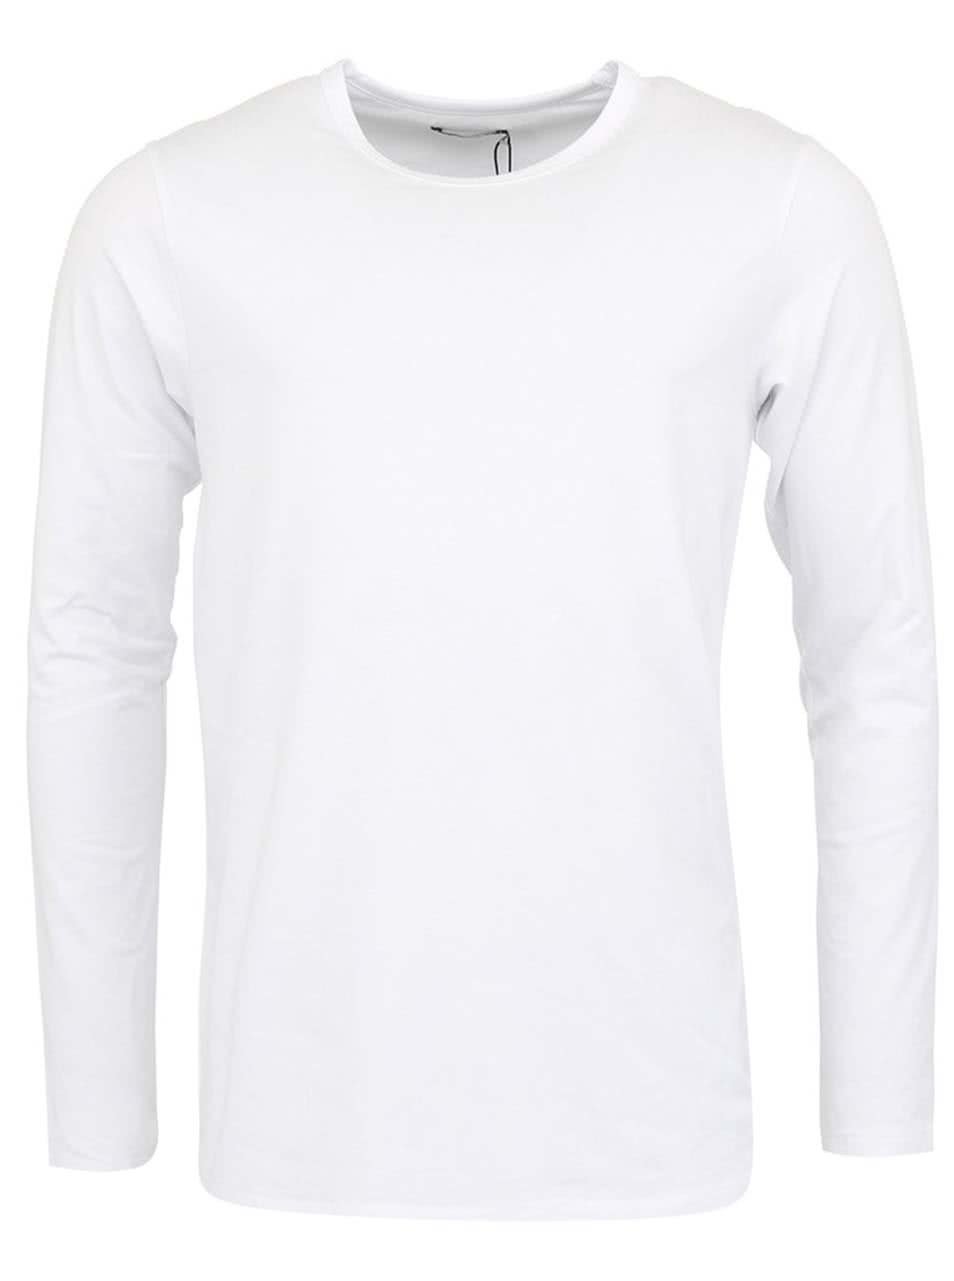 Bílé jednoduché triko s dlouhým rukávem Jack & Jones Basic